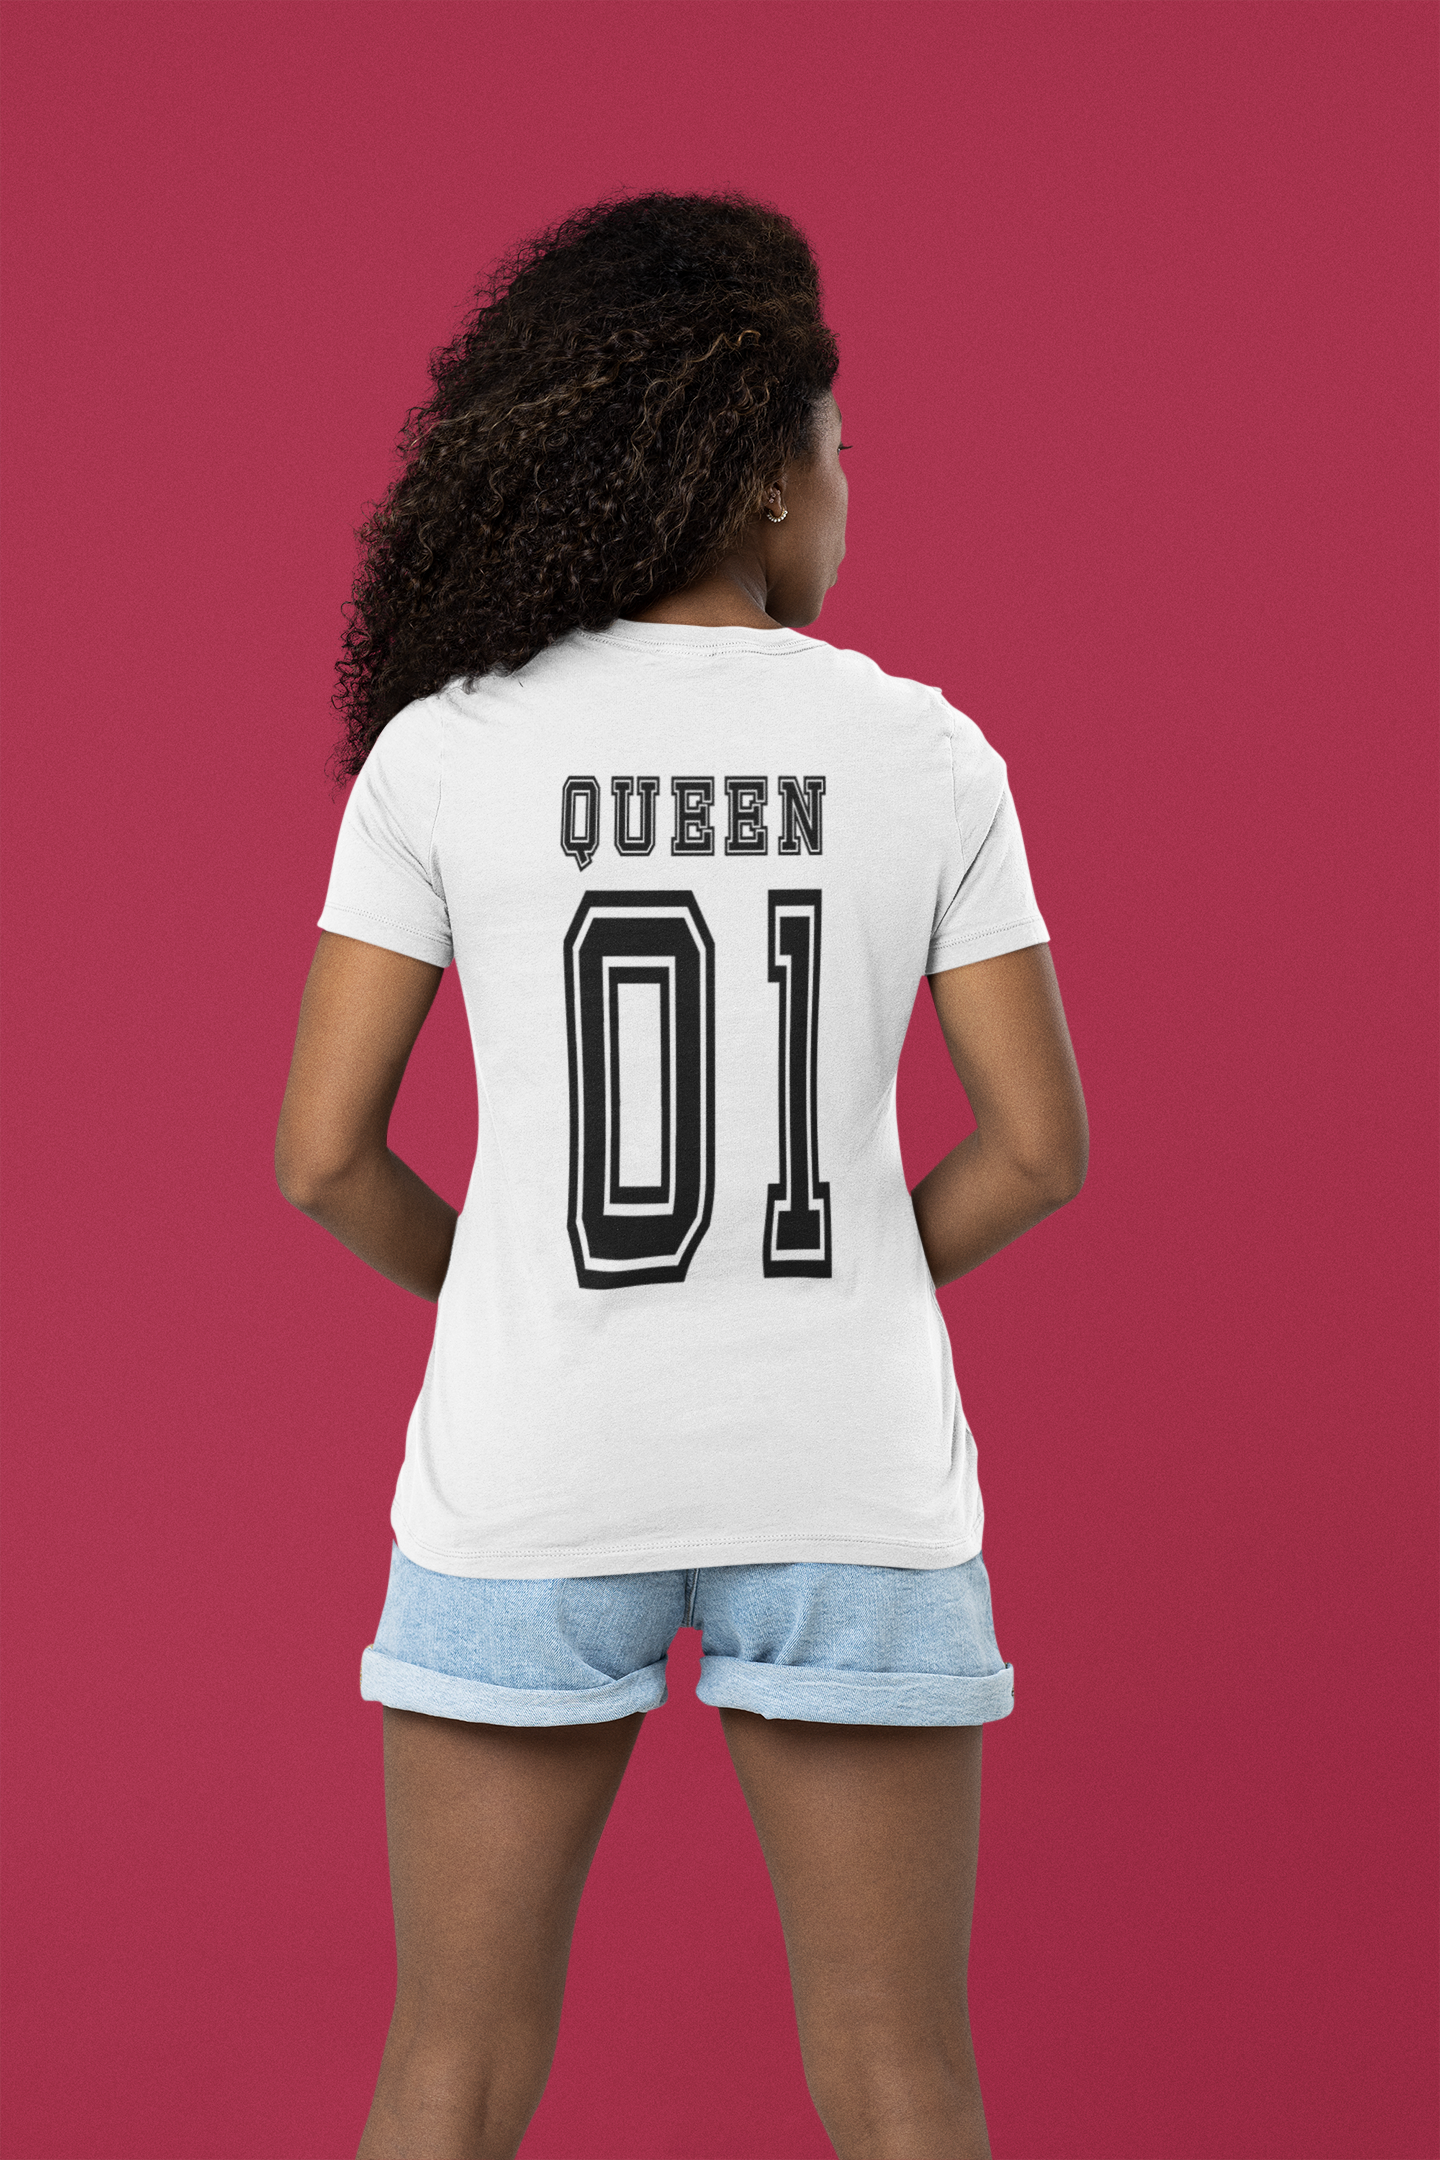 Queen 01 T-shirt